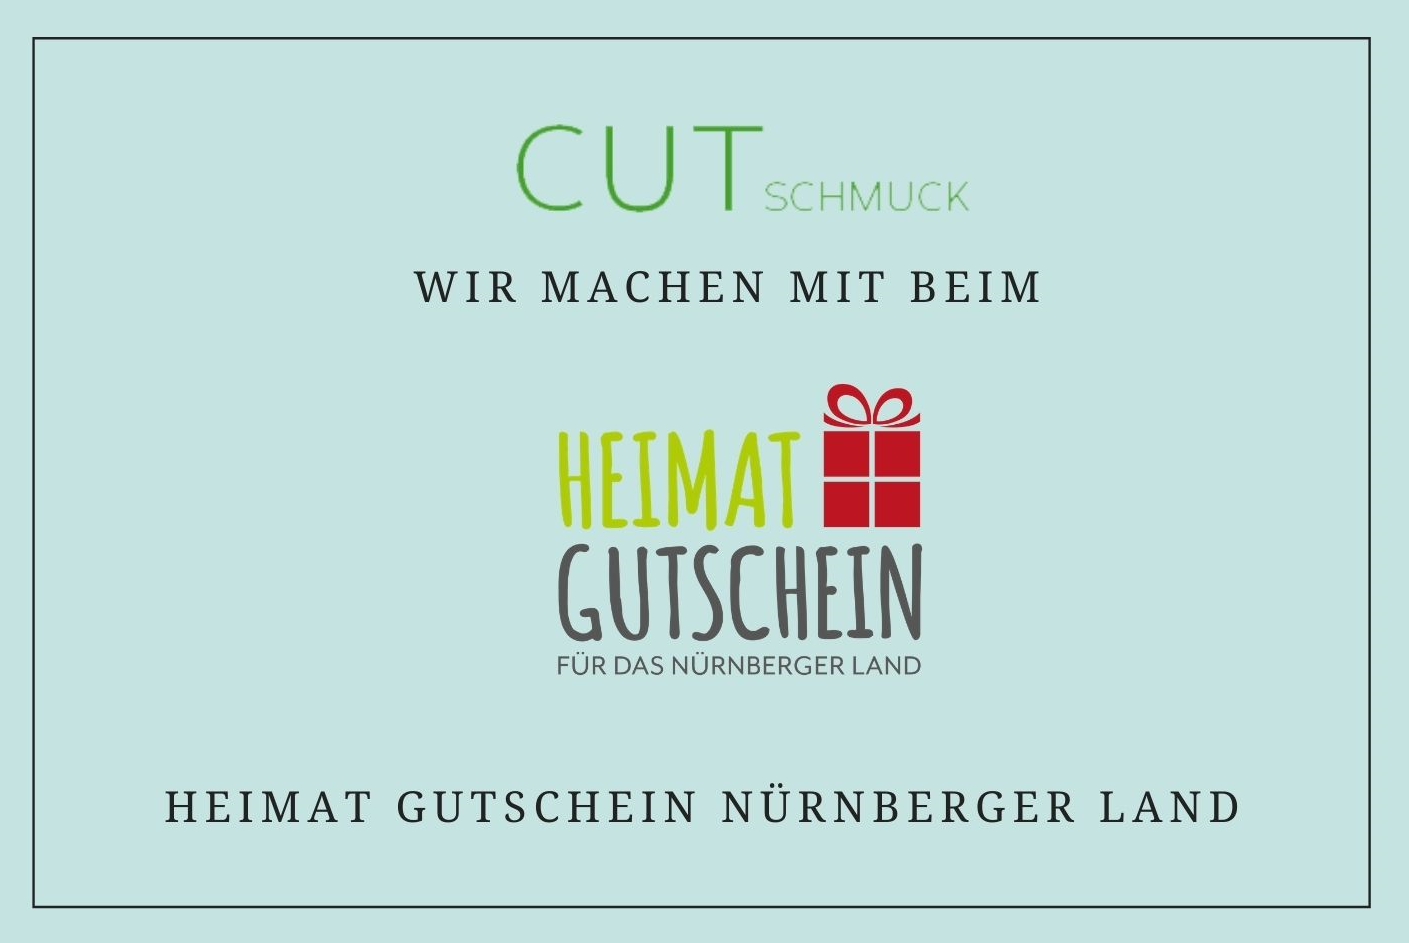 Heimtagutschein-nuernbergerland-cutschmuck